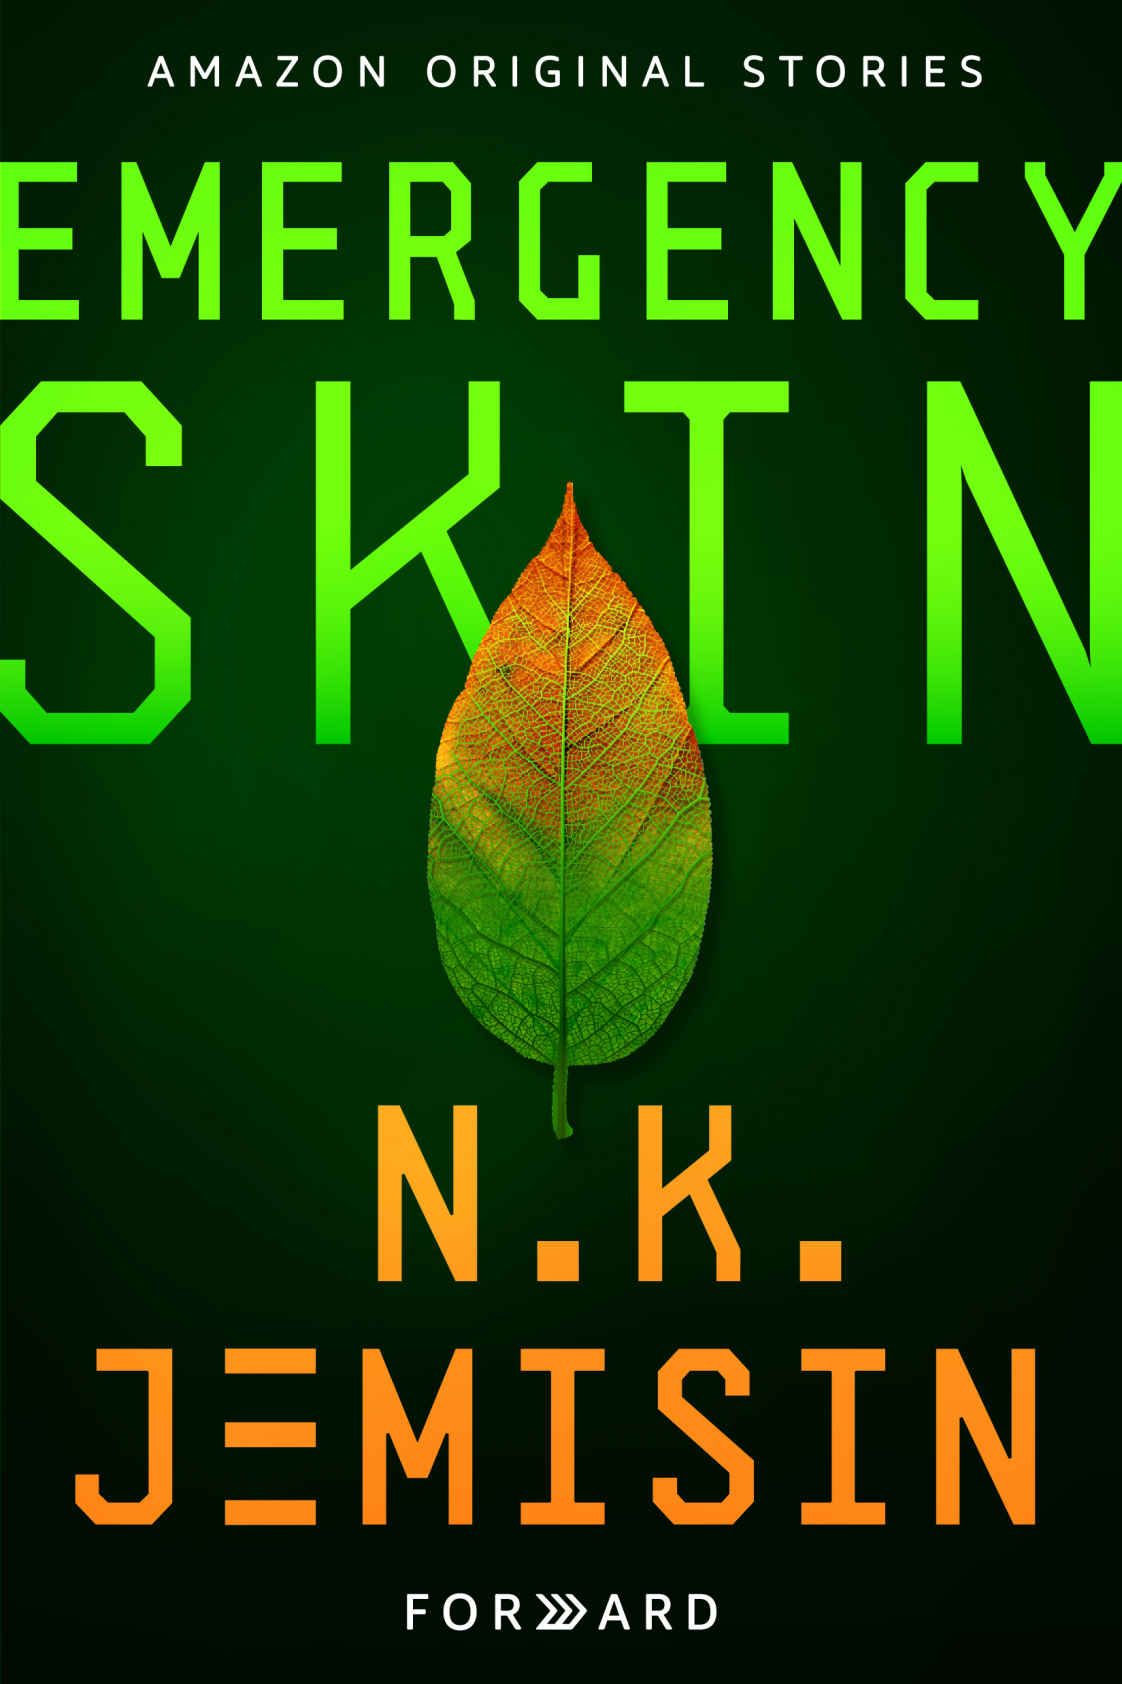 N. K. Jemisin: Emergency skin (EBook, 2019, Amazon Original Stories)